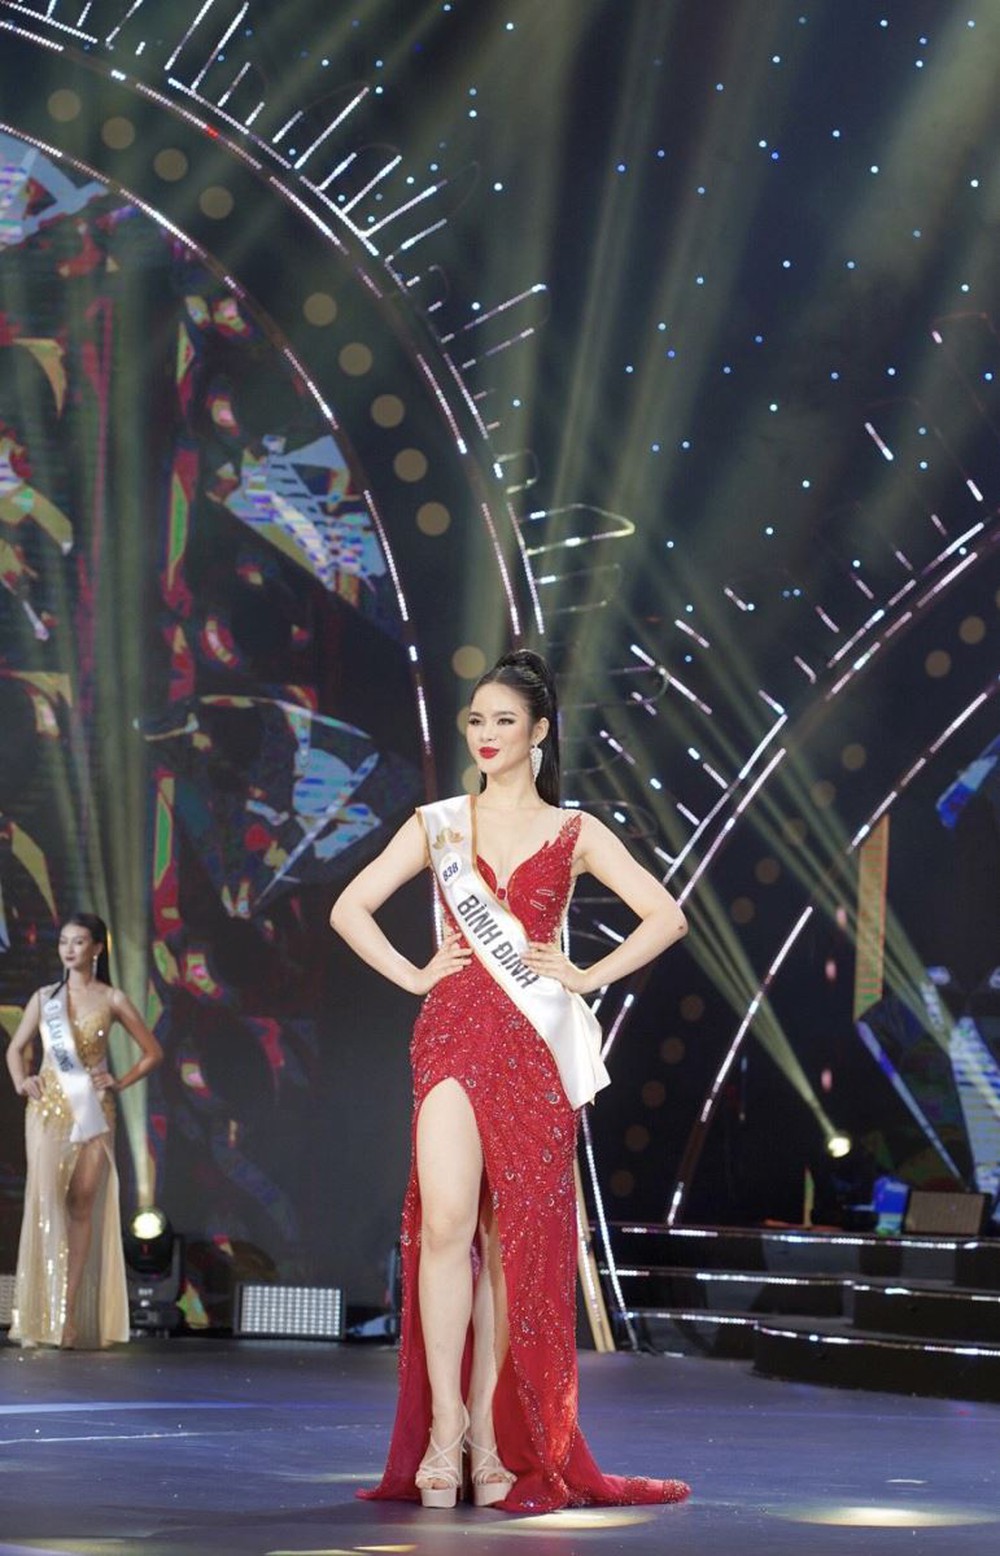 Bán kết Hoa hậu Du lịch Việt Nam 2022: Cháy’ hết mình trên sân khấu, 40 thí sinh xuất sắc đi tiếp vào đêm Chung kết - Ảnh 9.